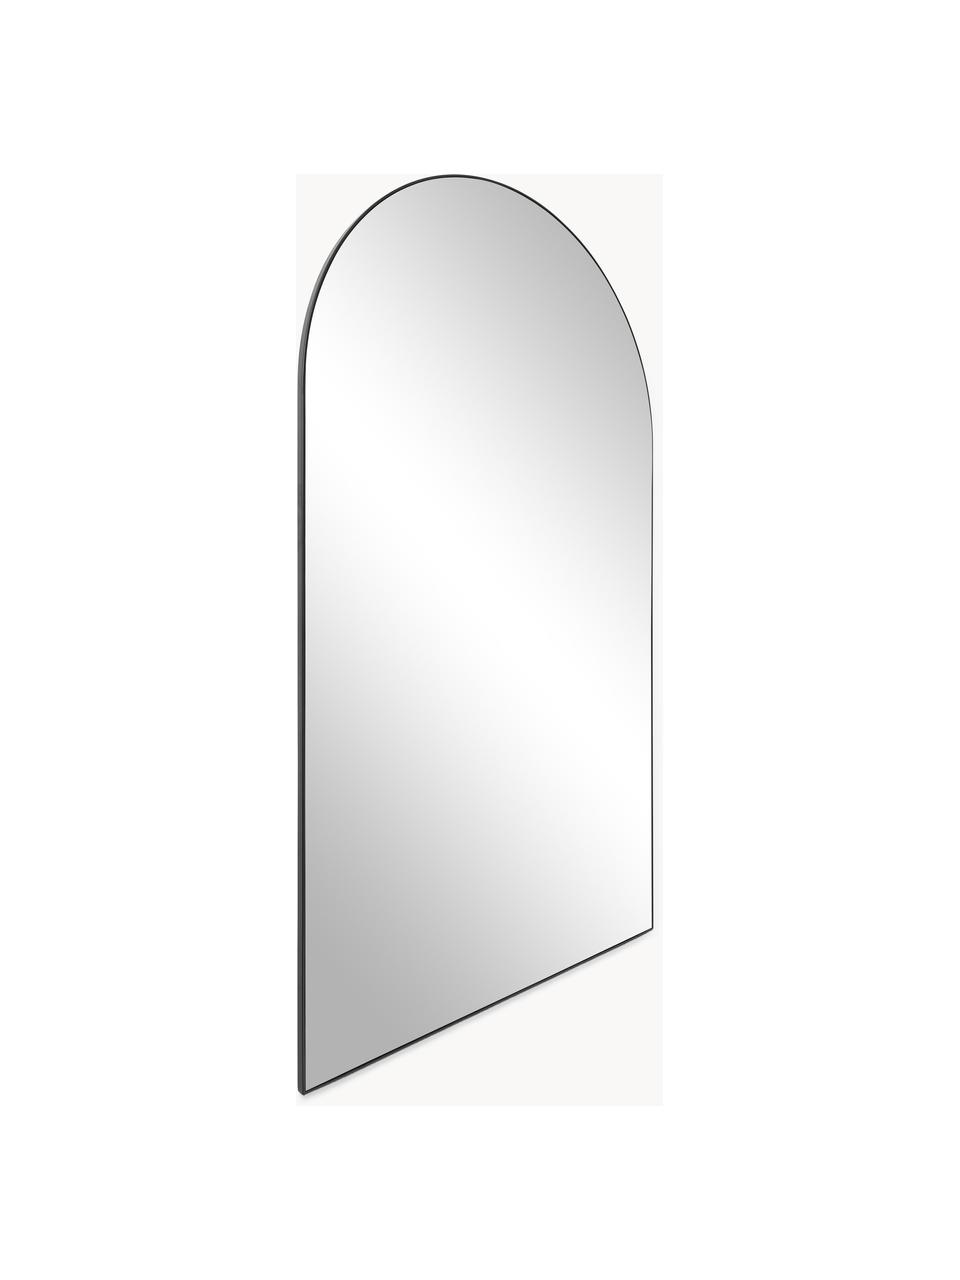 Grand miroir adossé Finley, Noir, haut. 74 cm